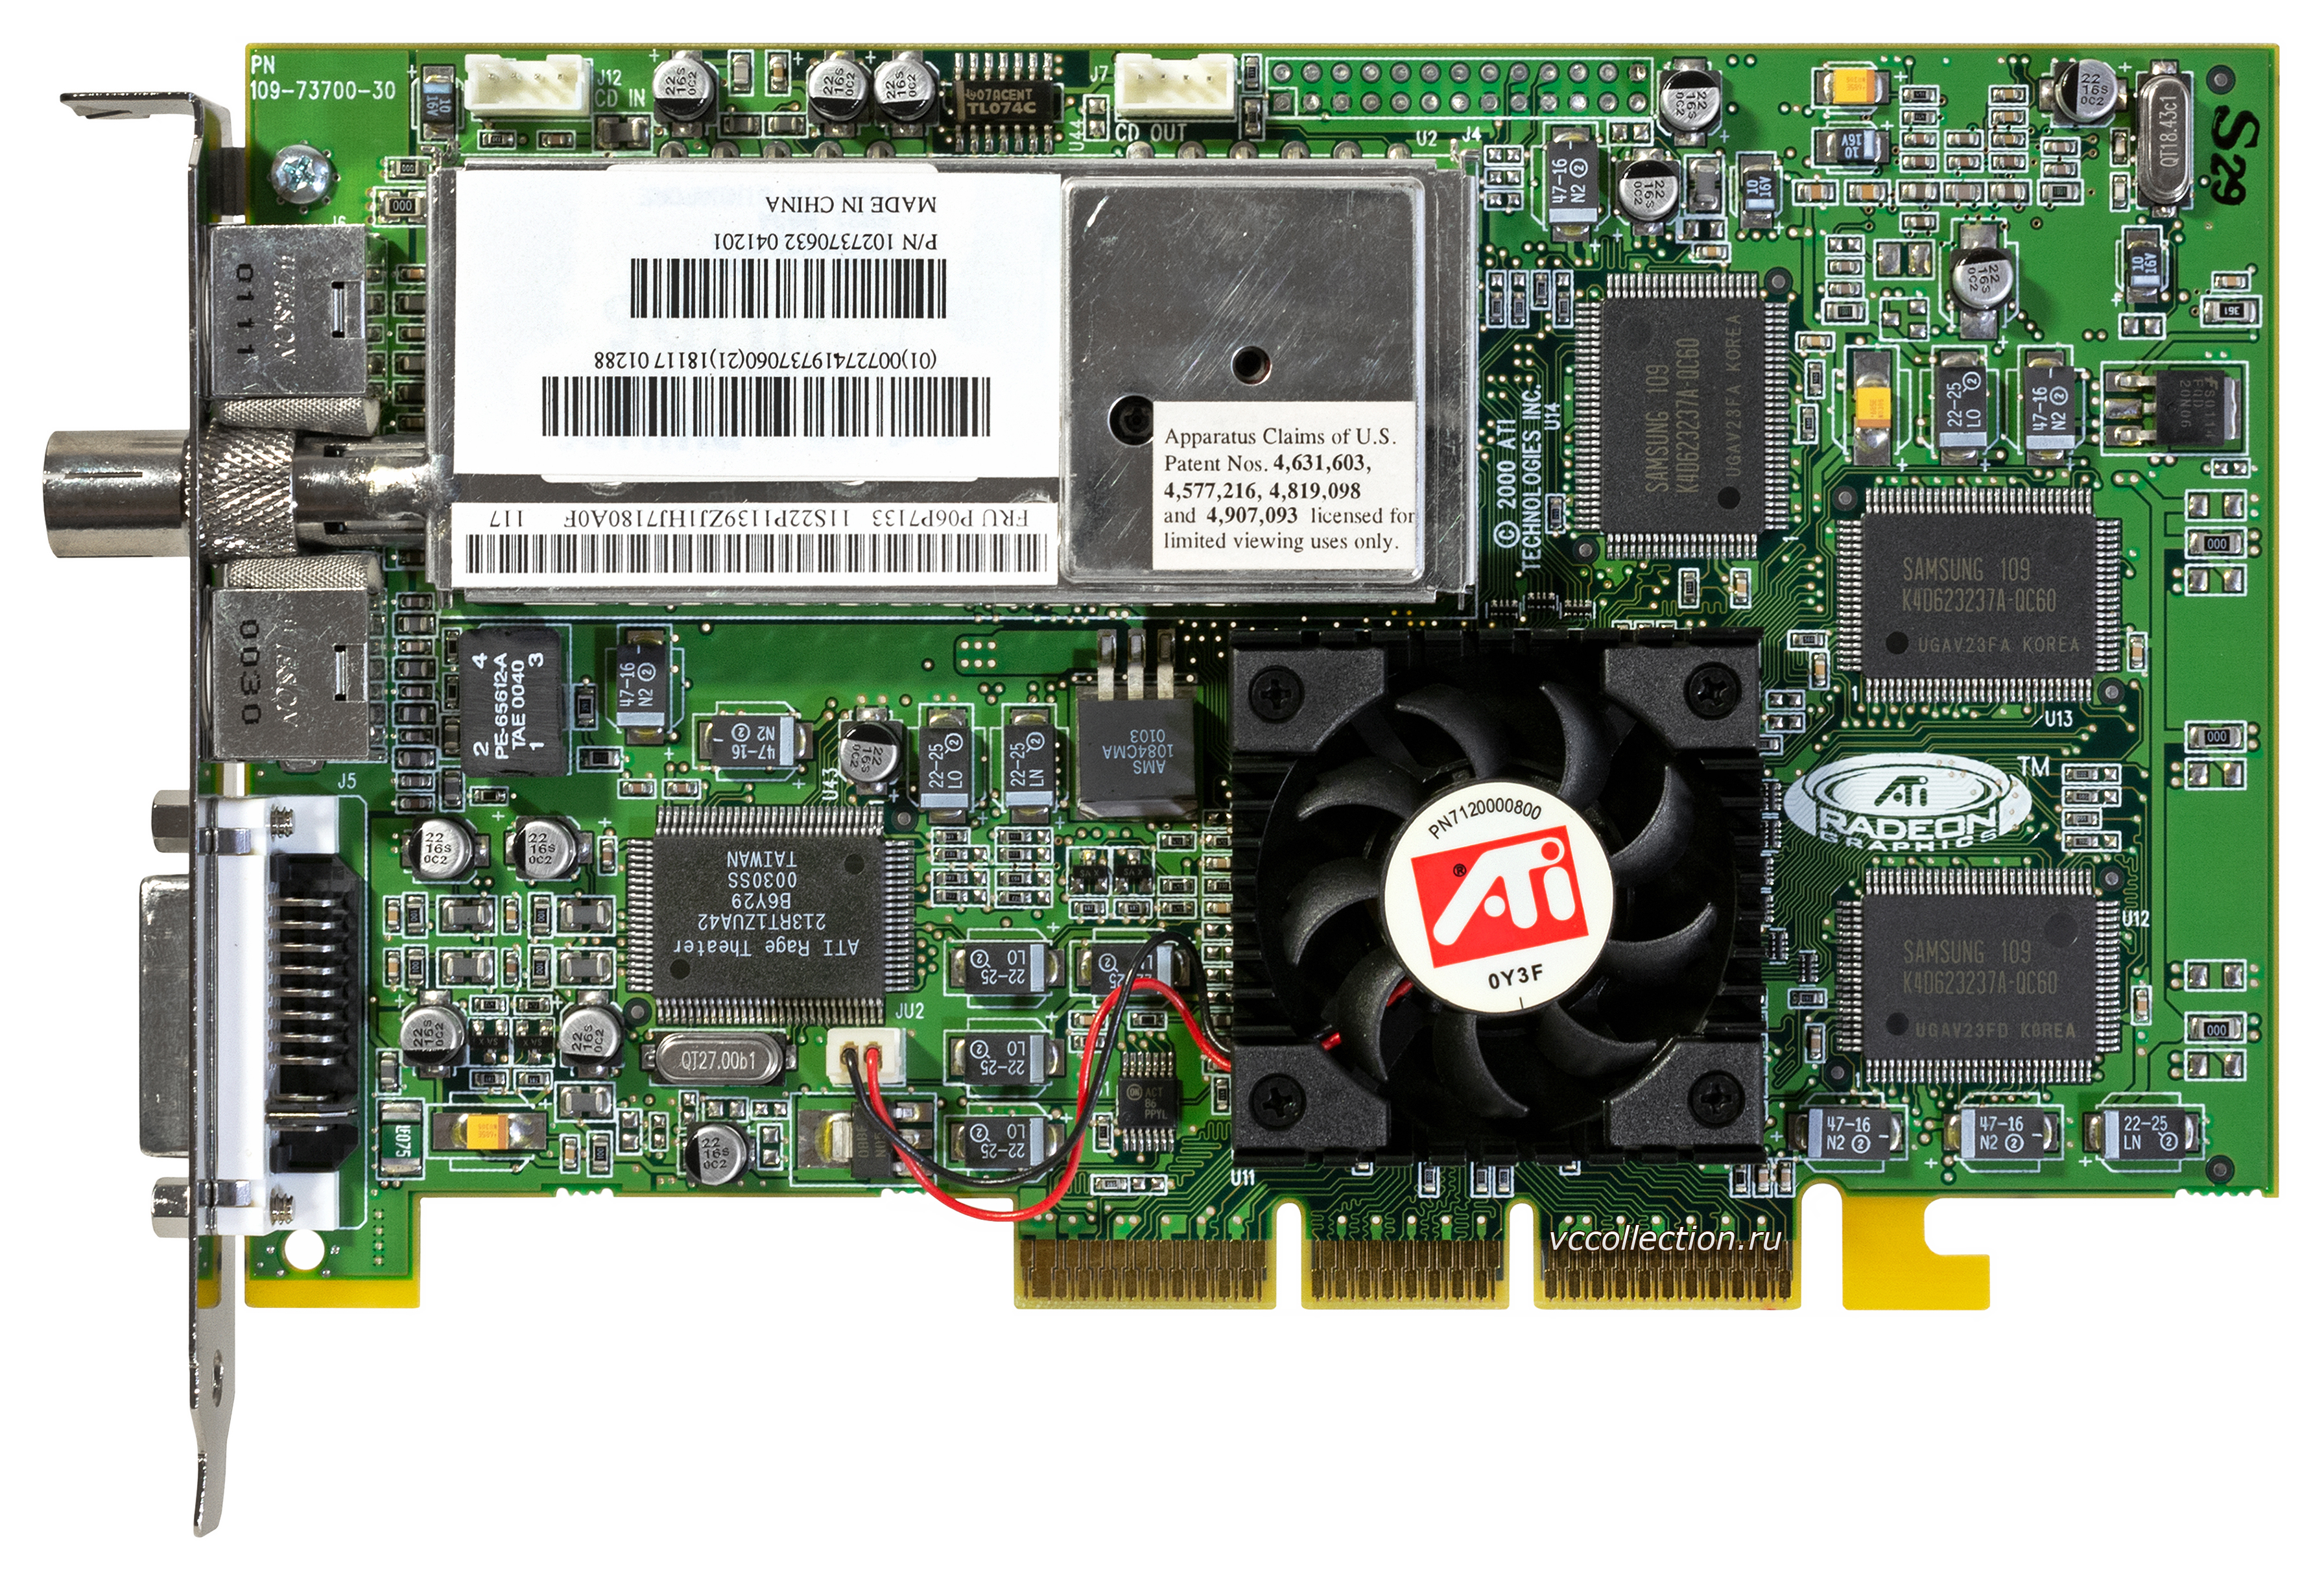 Ati mobility radeon 4500 series. ATI Rage 128 VR 32mb PCI. ATI Mobility 4500. Radeon 7200 Series.